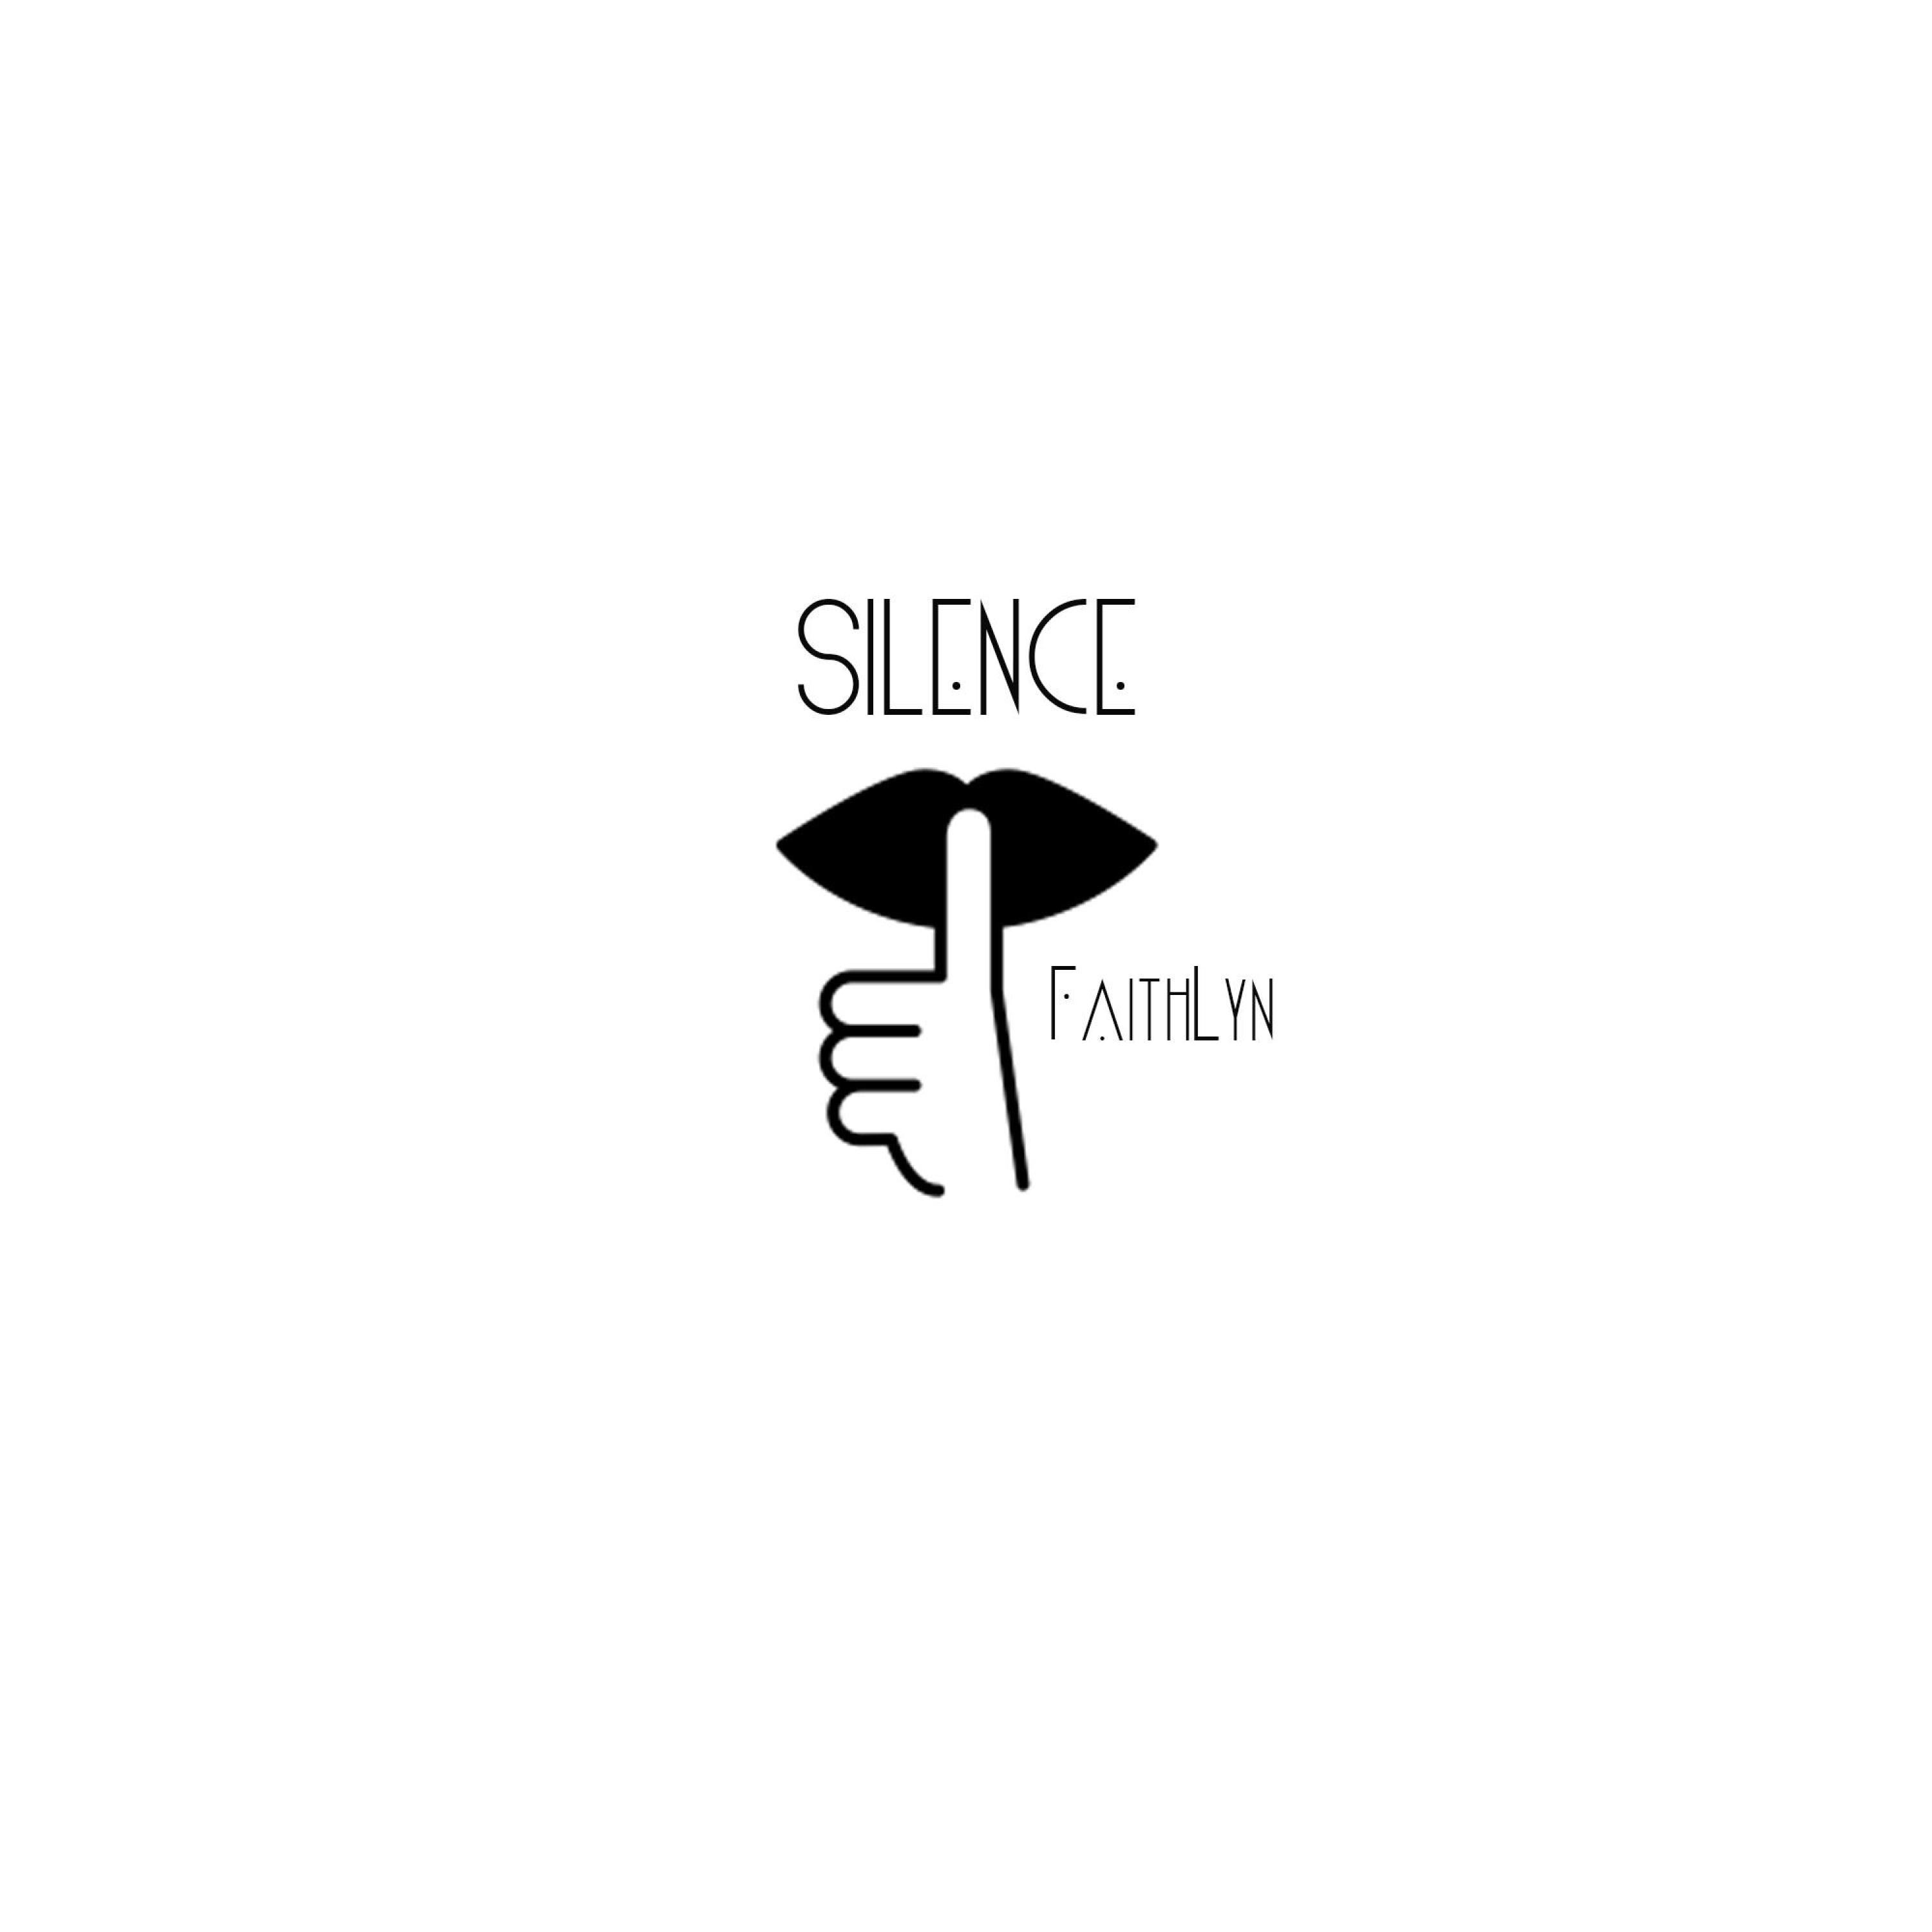 Faith Lyn - Silence